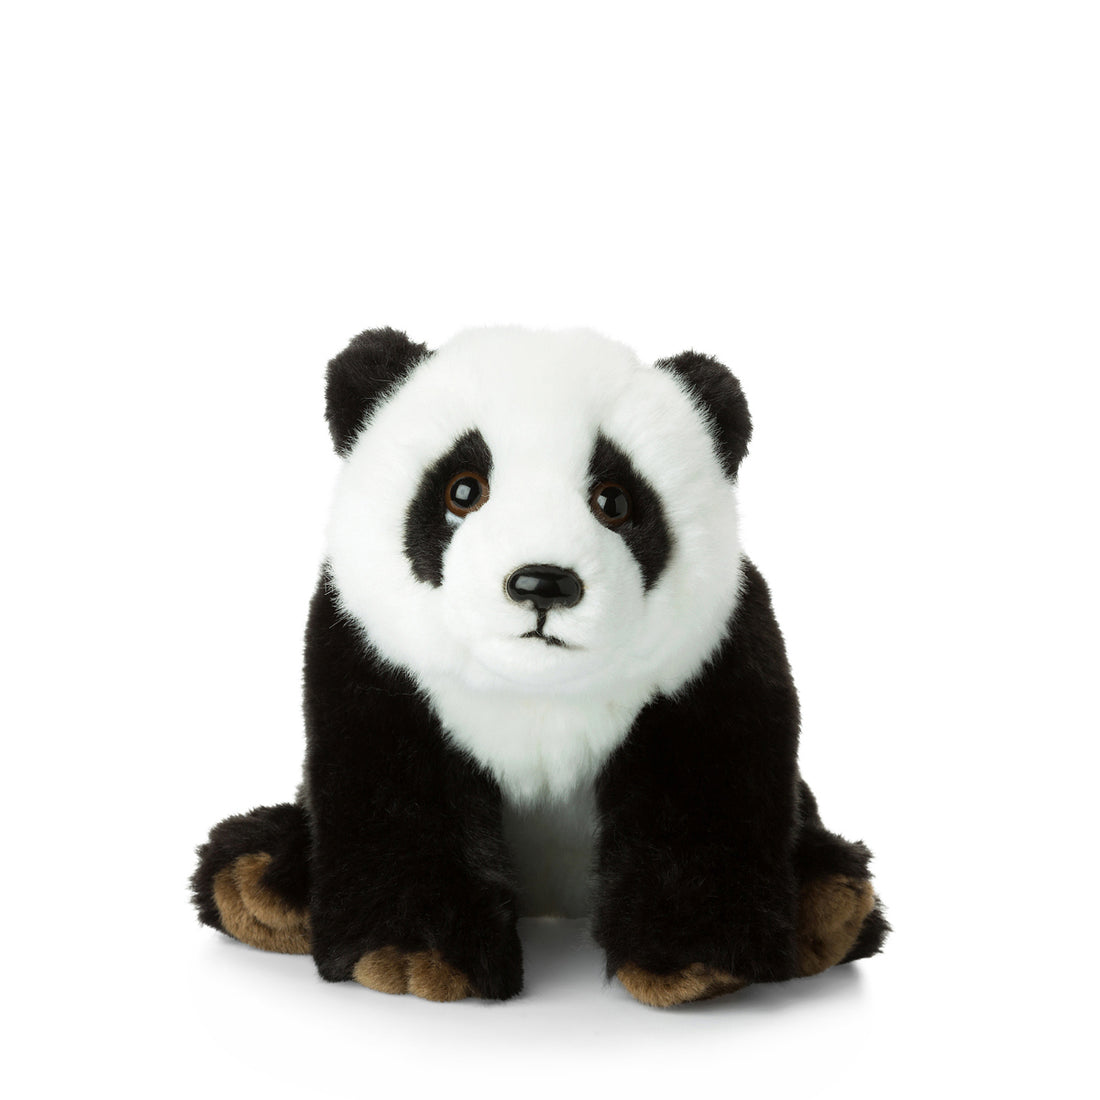 wwf-panda-floppy-23-cm-9-wwf-15183005